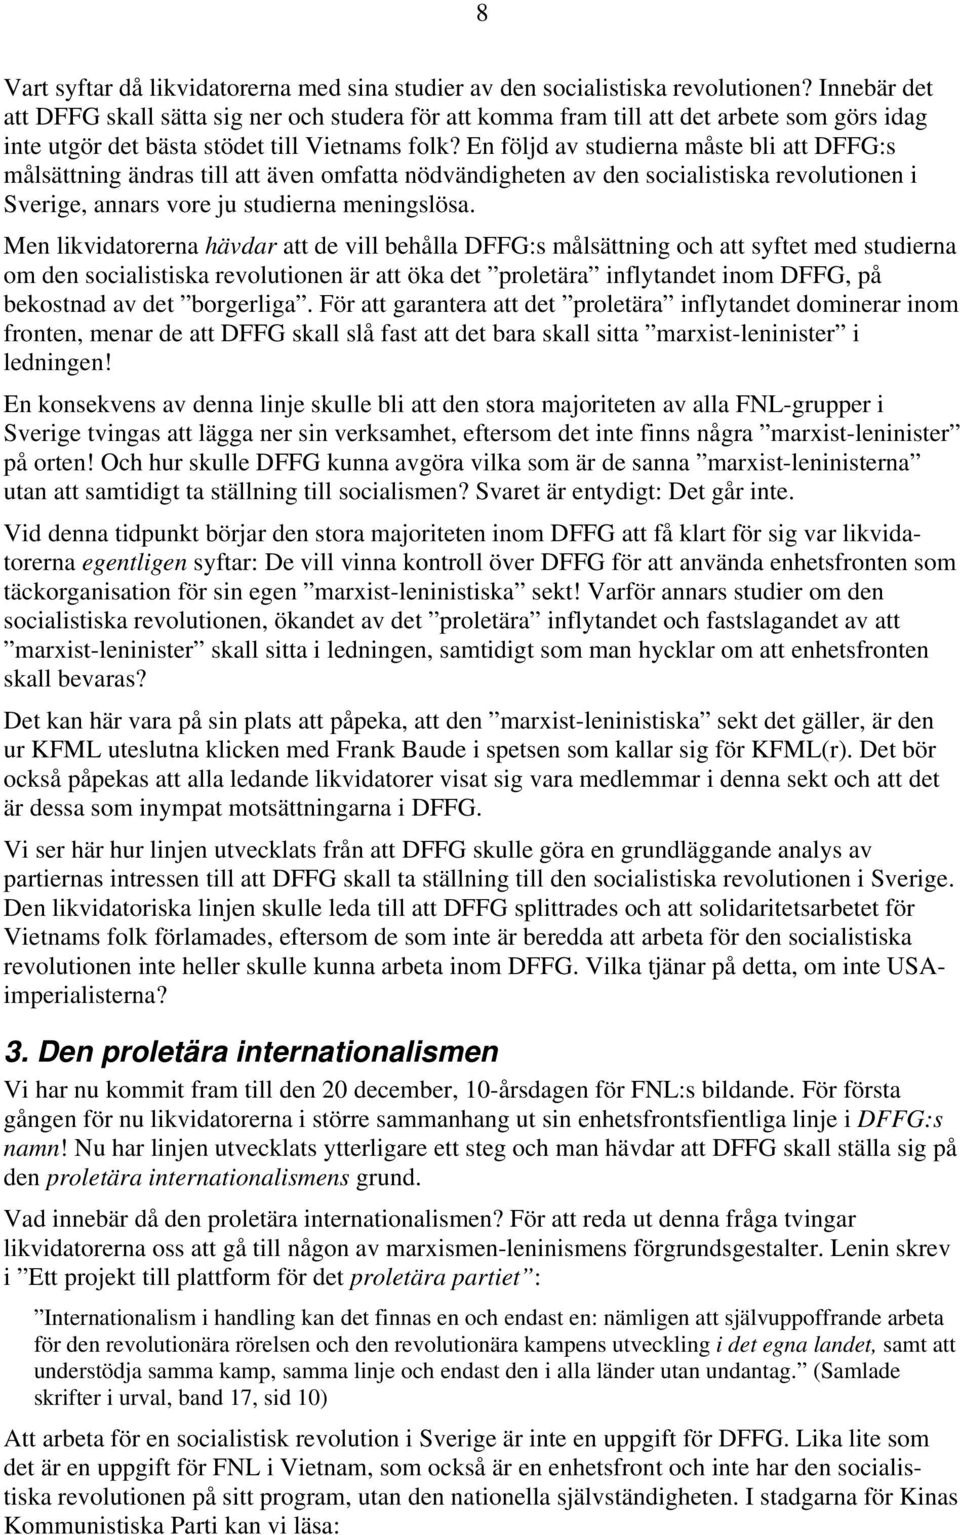 En följd av studierna måste bli att DFFG:s målsättning ändras till att även omfatta nödvändigheten av den socialistiska revolutionen i Sverige, annars vore ju studierna meningslösa.